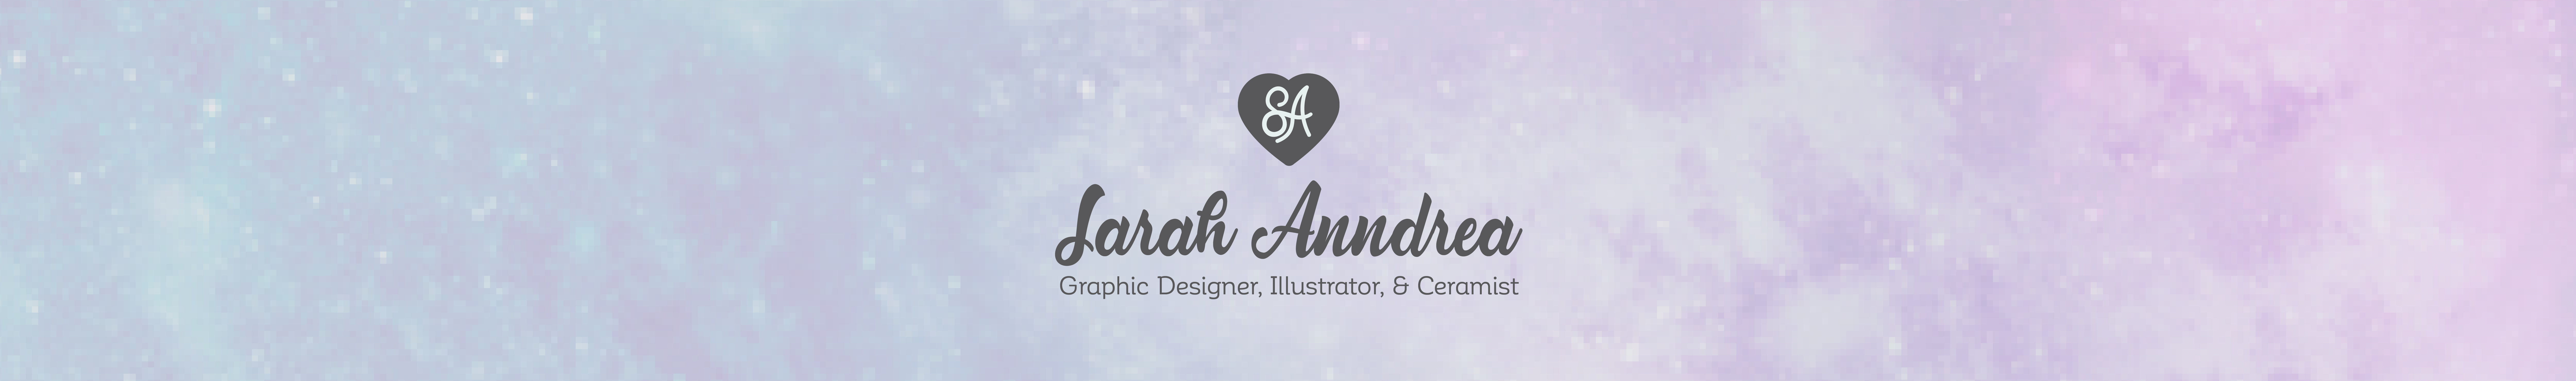 Sarah Anndrea White's profile banner